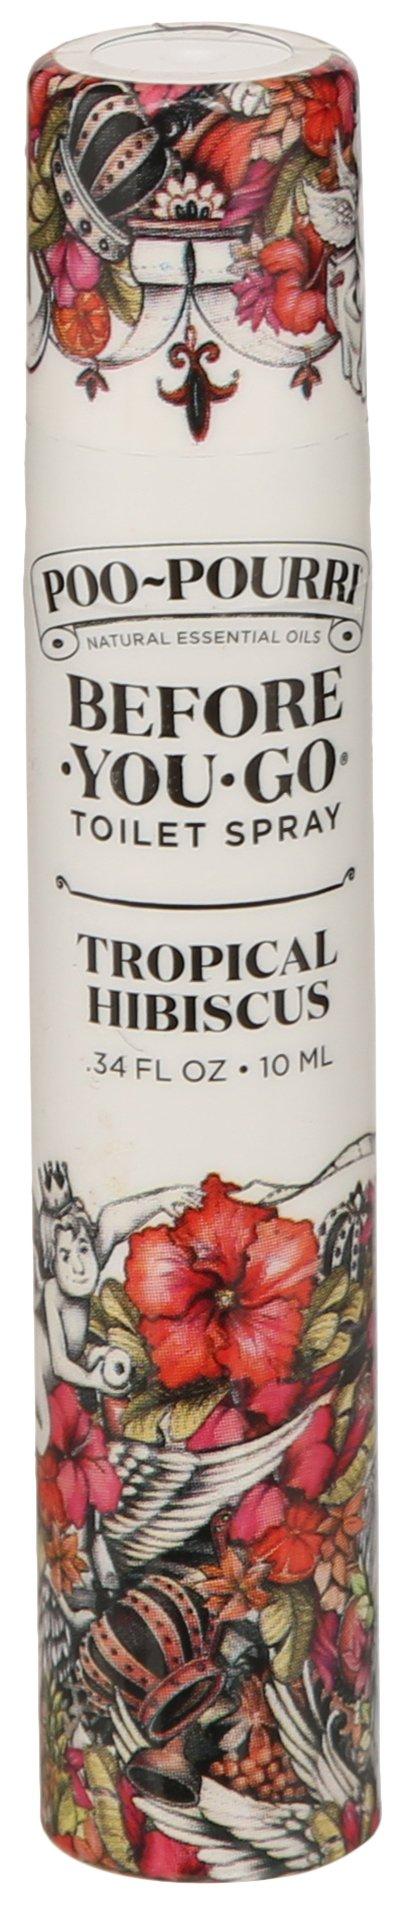 Poo-Pourri Tropical Hibiscus Before You Go Toilet Spray